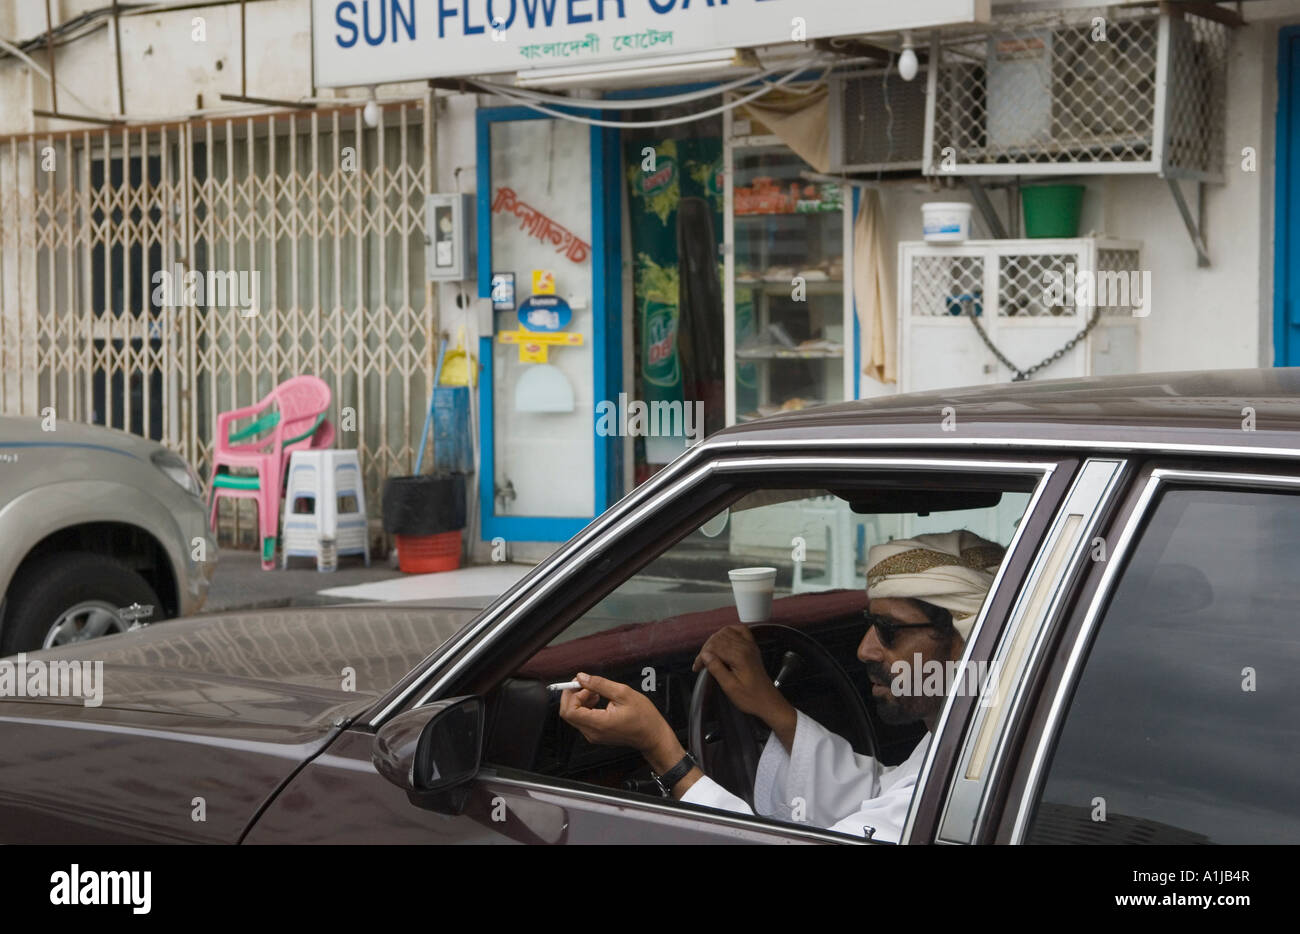 Abu Dhabi Vereinigte Arabische Emirate VAE gewöhnliche armer Straßenszene Mann sitzen im Auto rauchen flicking Asche aus Autofenster HOMER SYKES Stockfoto